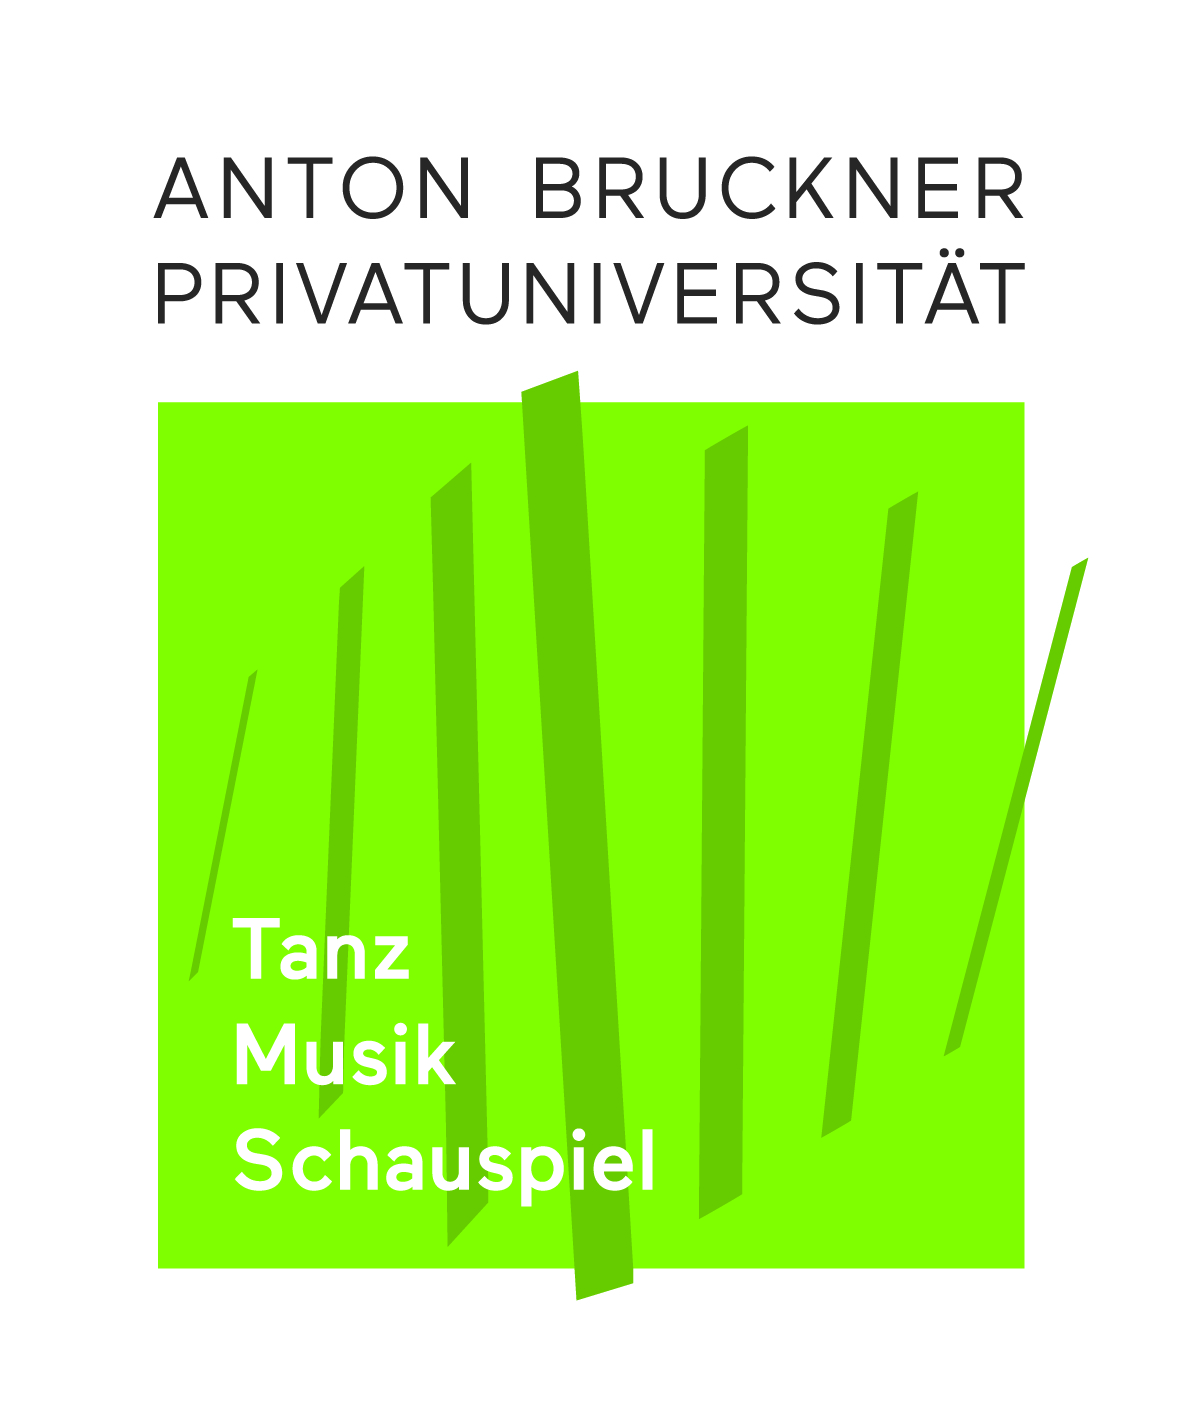 Anton Bruckner Privatuniversität Logo